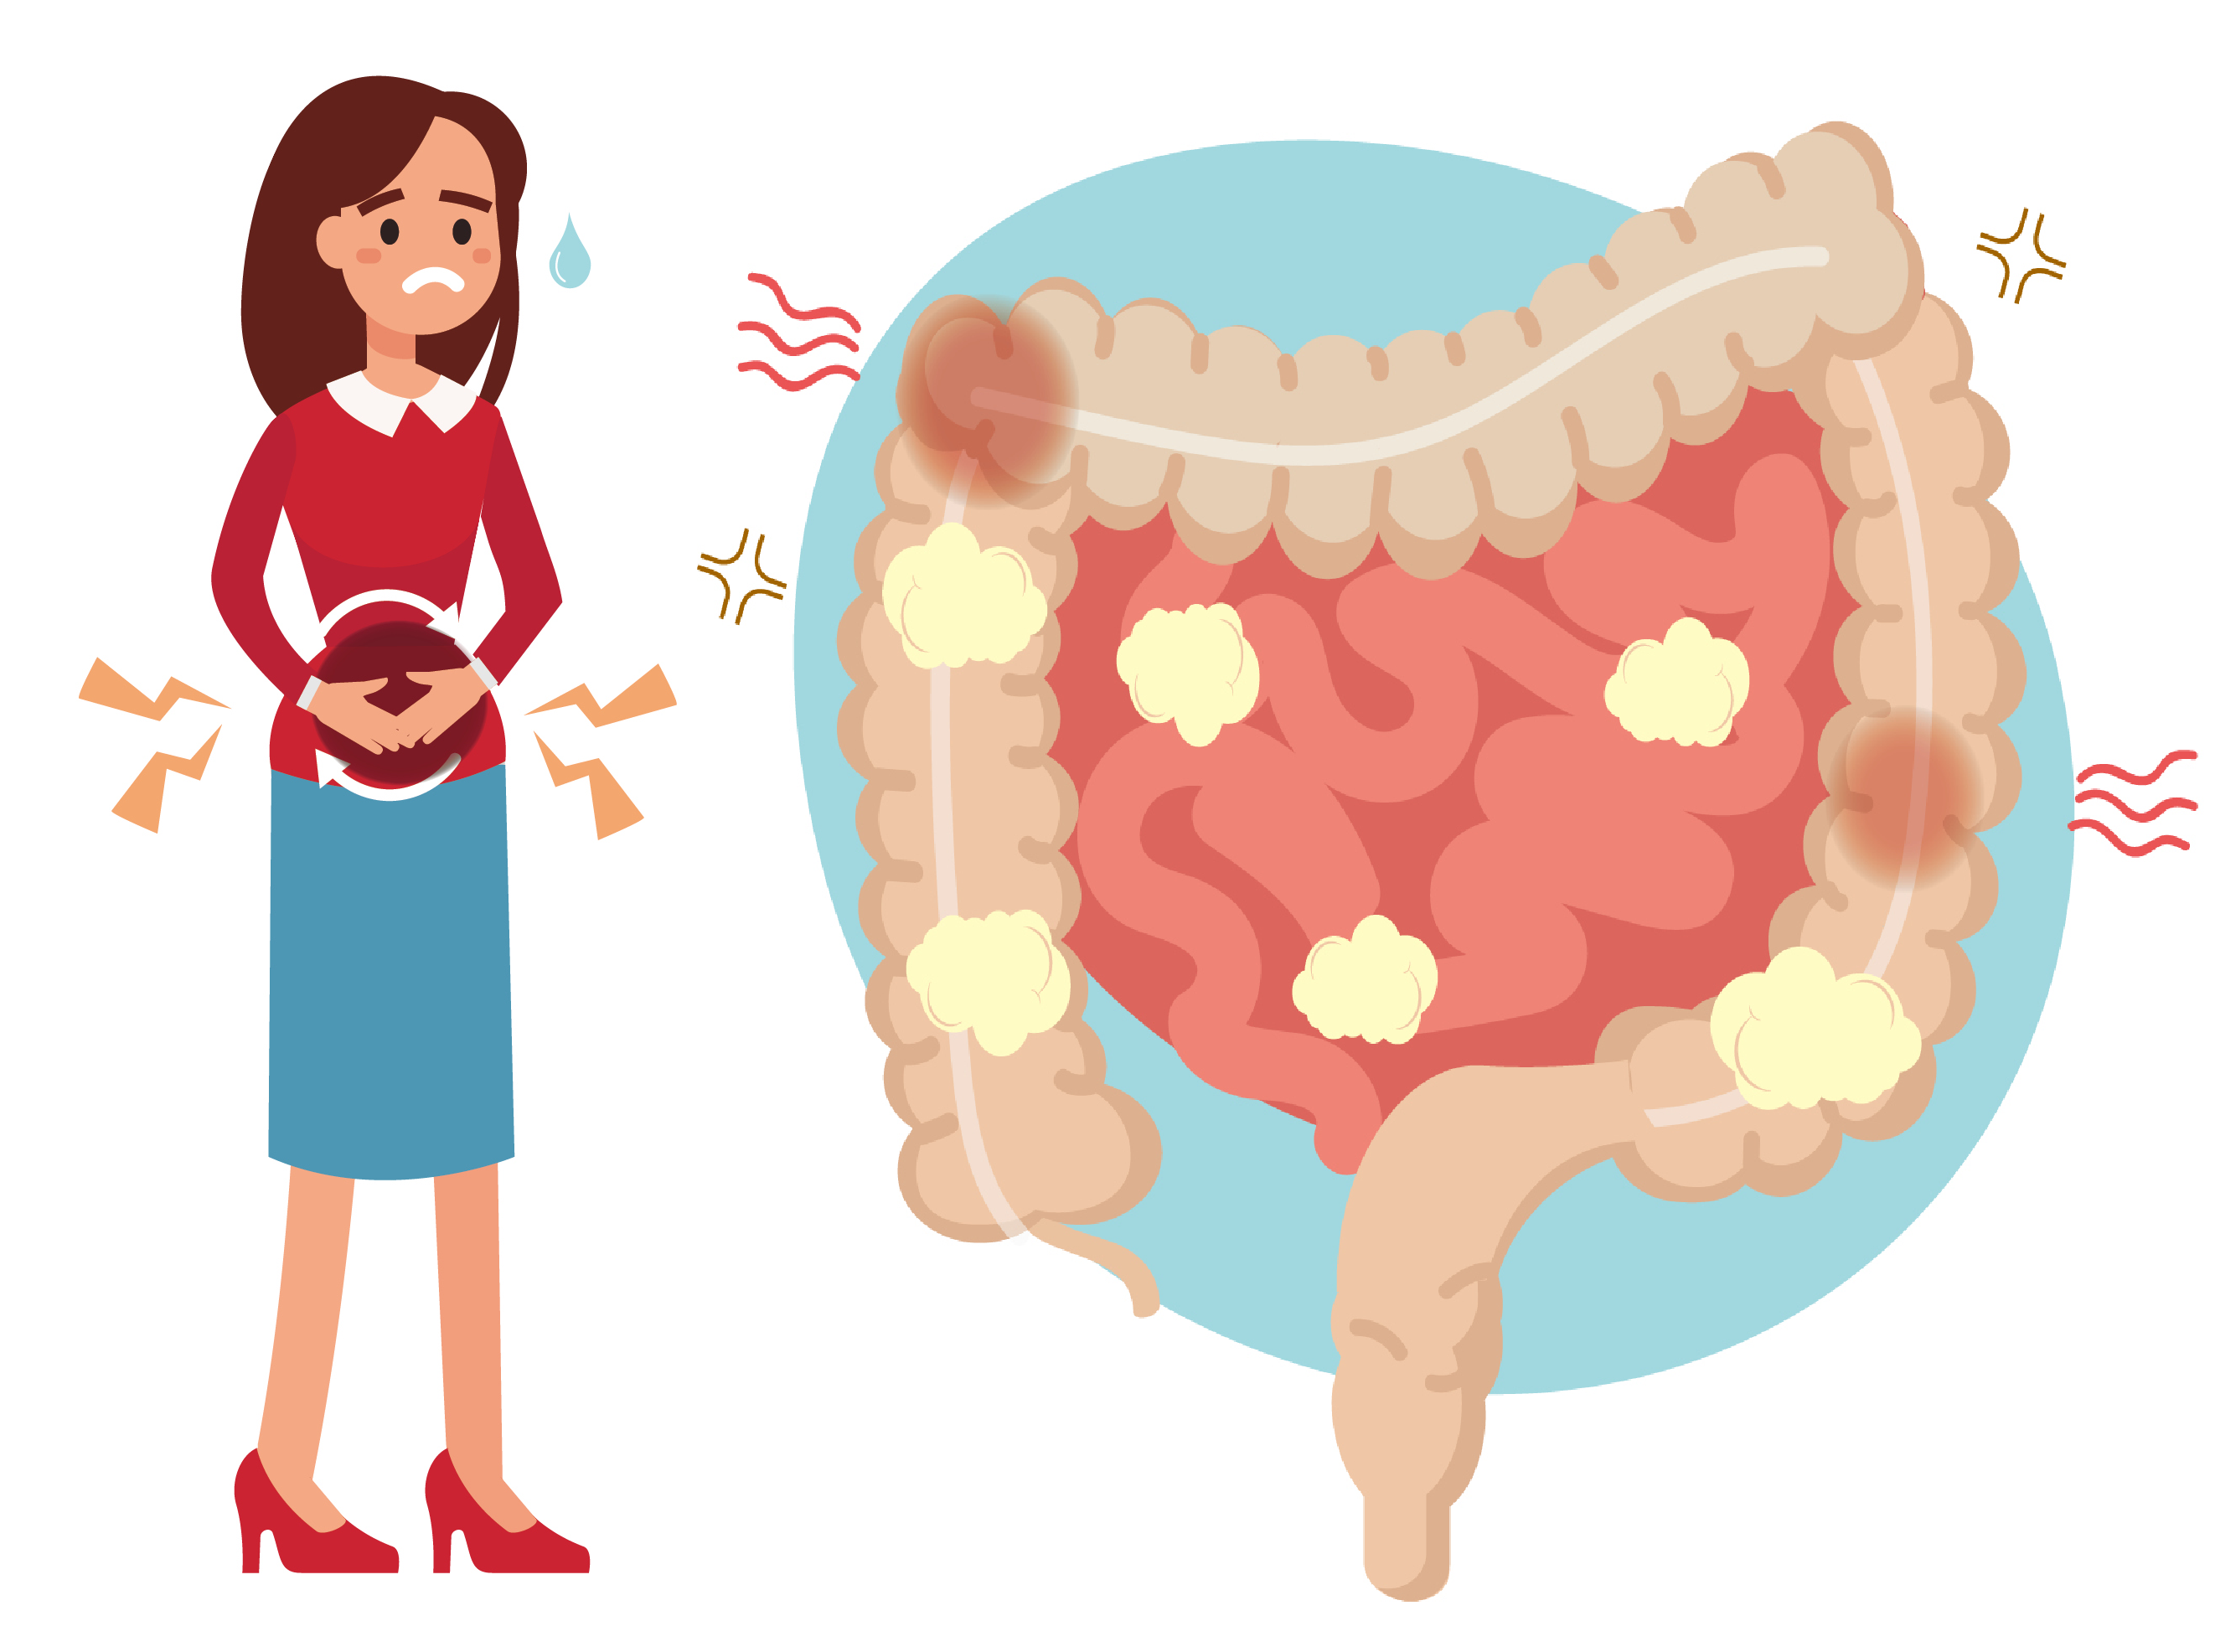 科学网—[转载]一文了解肠道菌群与各大器官的联系：肠-脑轴、肠-肾轴、肠-肝轴、肠-心轴、肠-骨骼轴、肠-皮肤轴、肠-脂肪轴 - 牛耀芳的博文